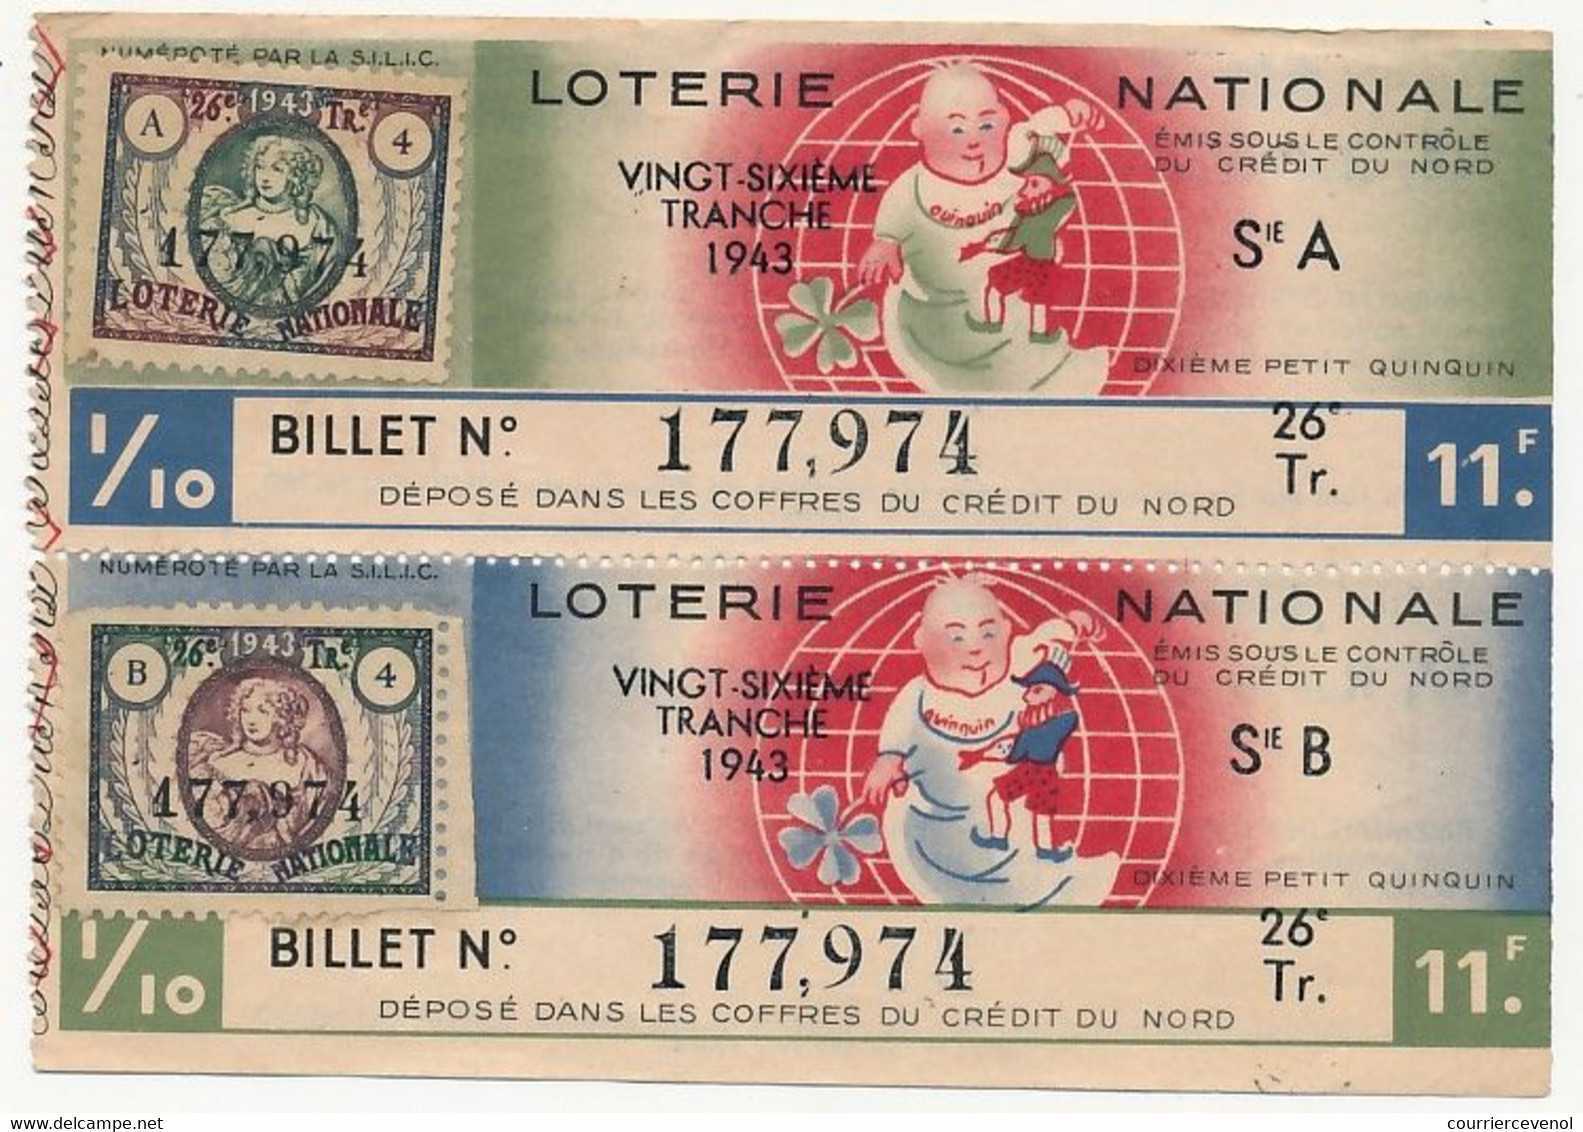 FRANCE - Loterie Nationale - 1/10ème A Et B - Crédit Du Nord - Dixième Petit Quiquin - 26eme Tranche 1943 - Loterijbiljetten